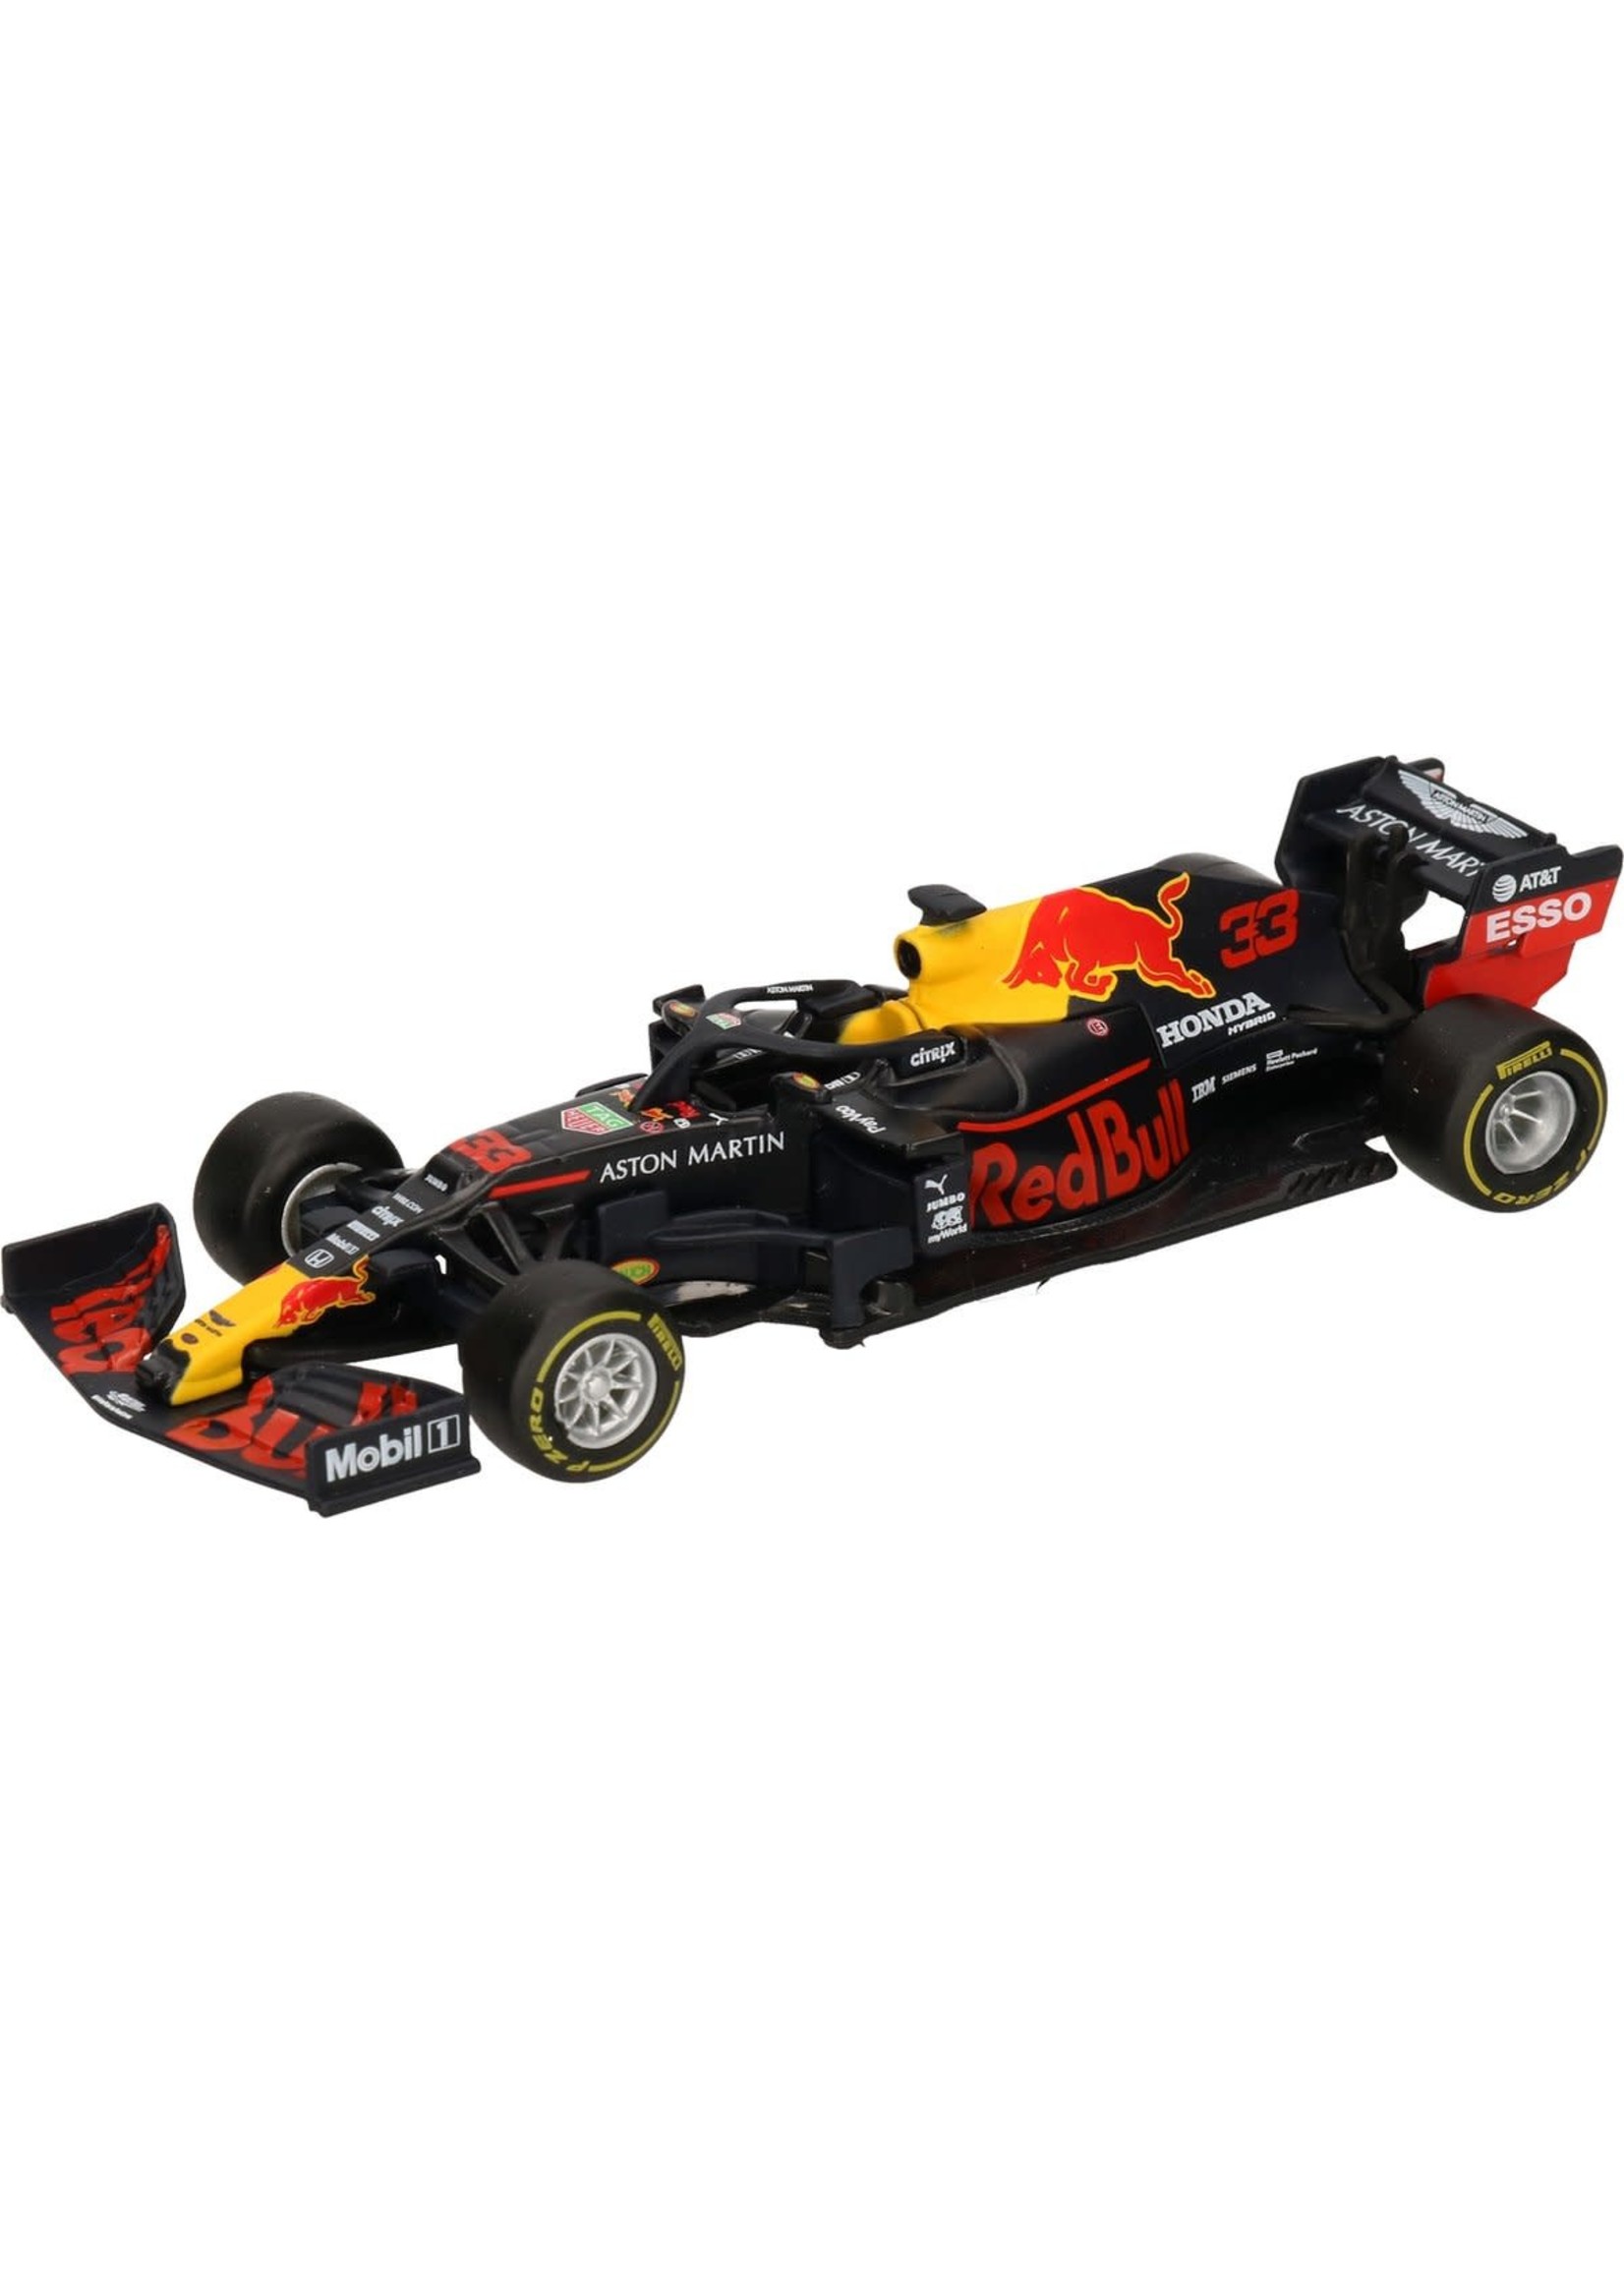 Bburago Modelauto RB16 Red Bull Racing Max Verstappen 1:43